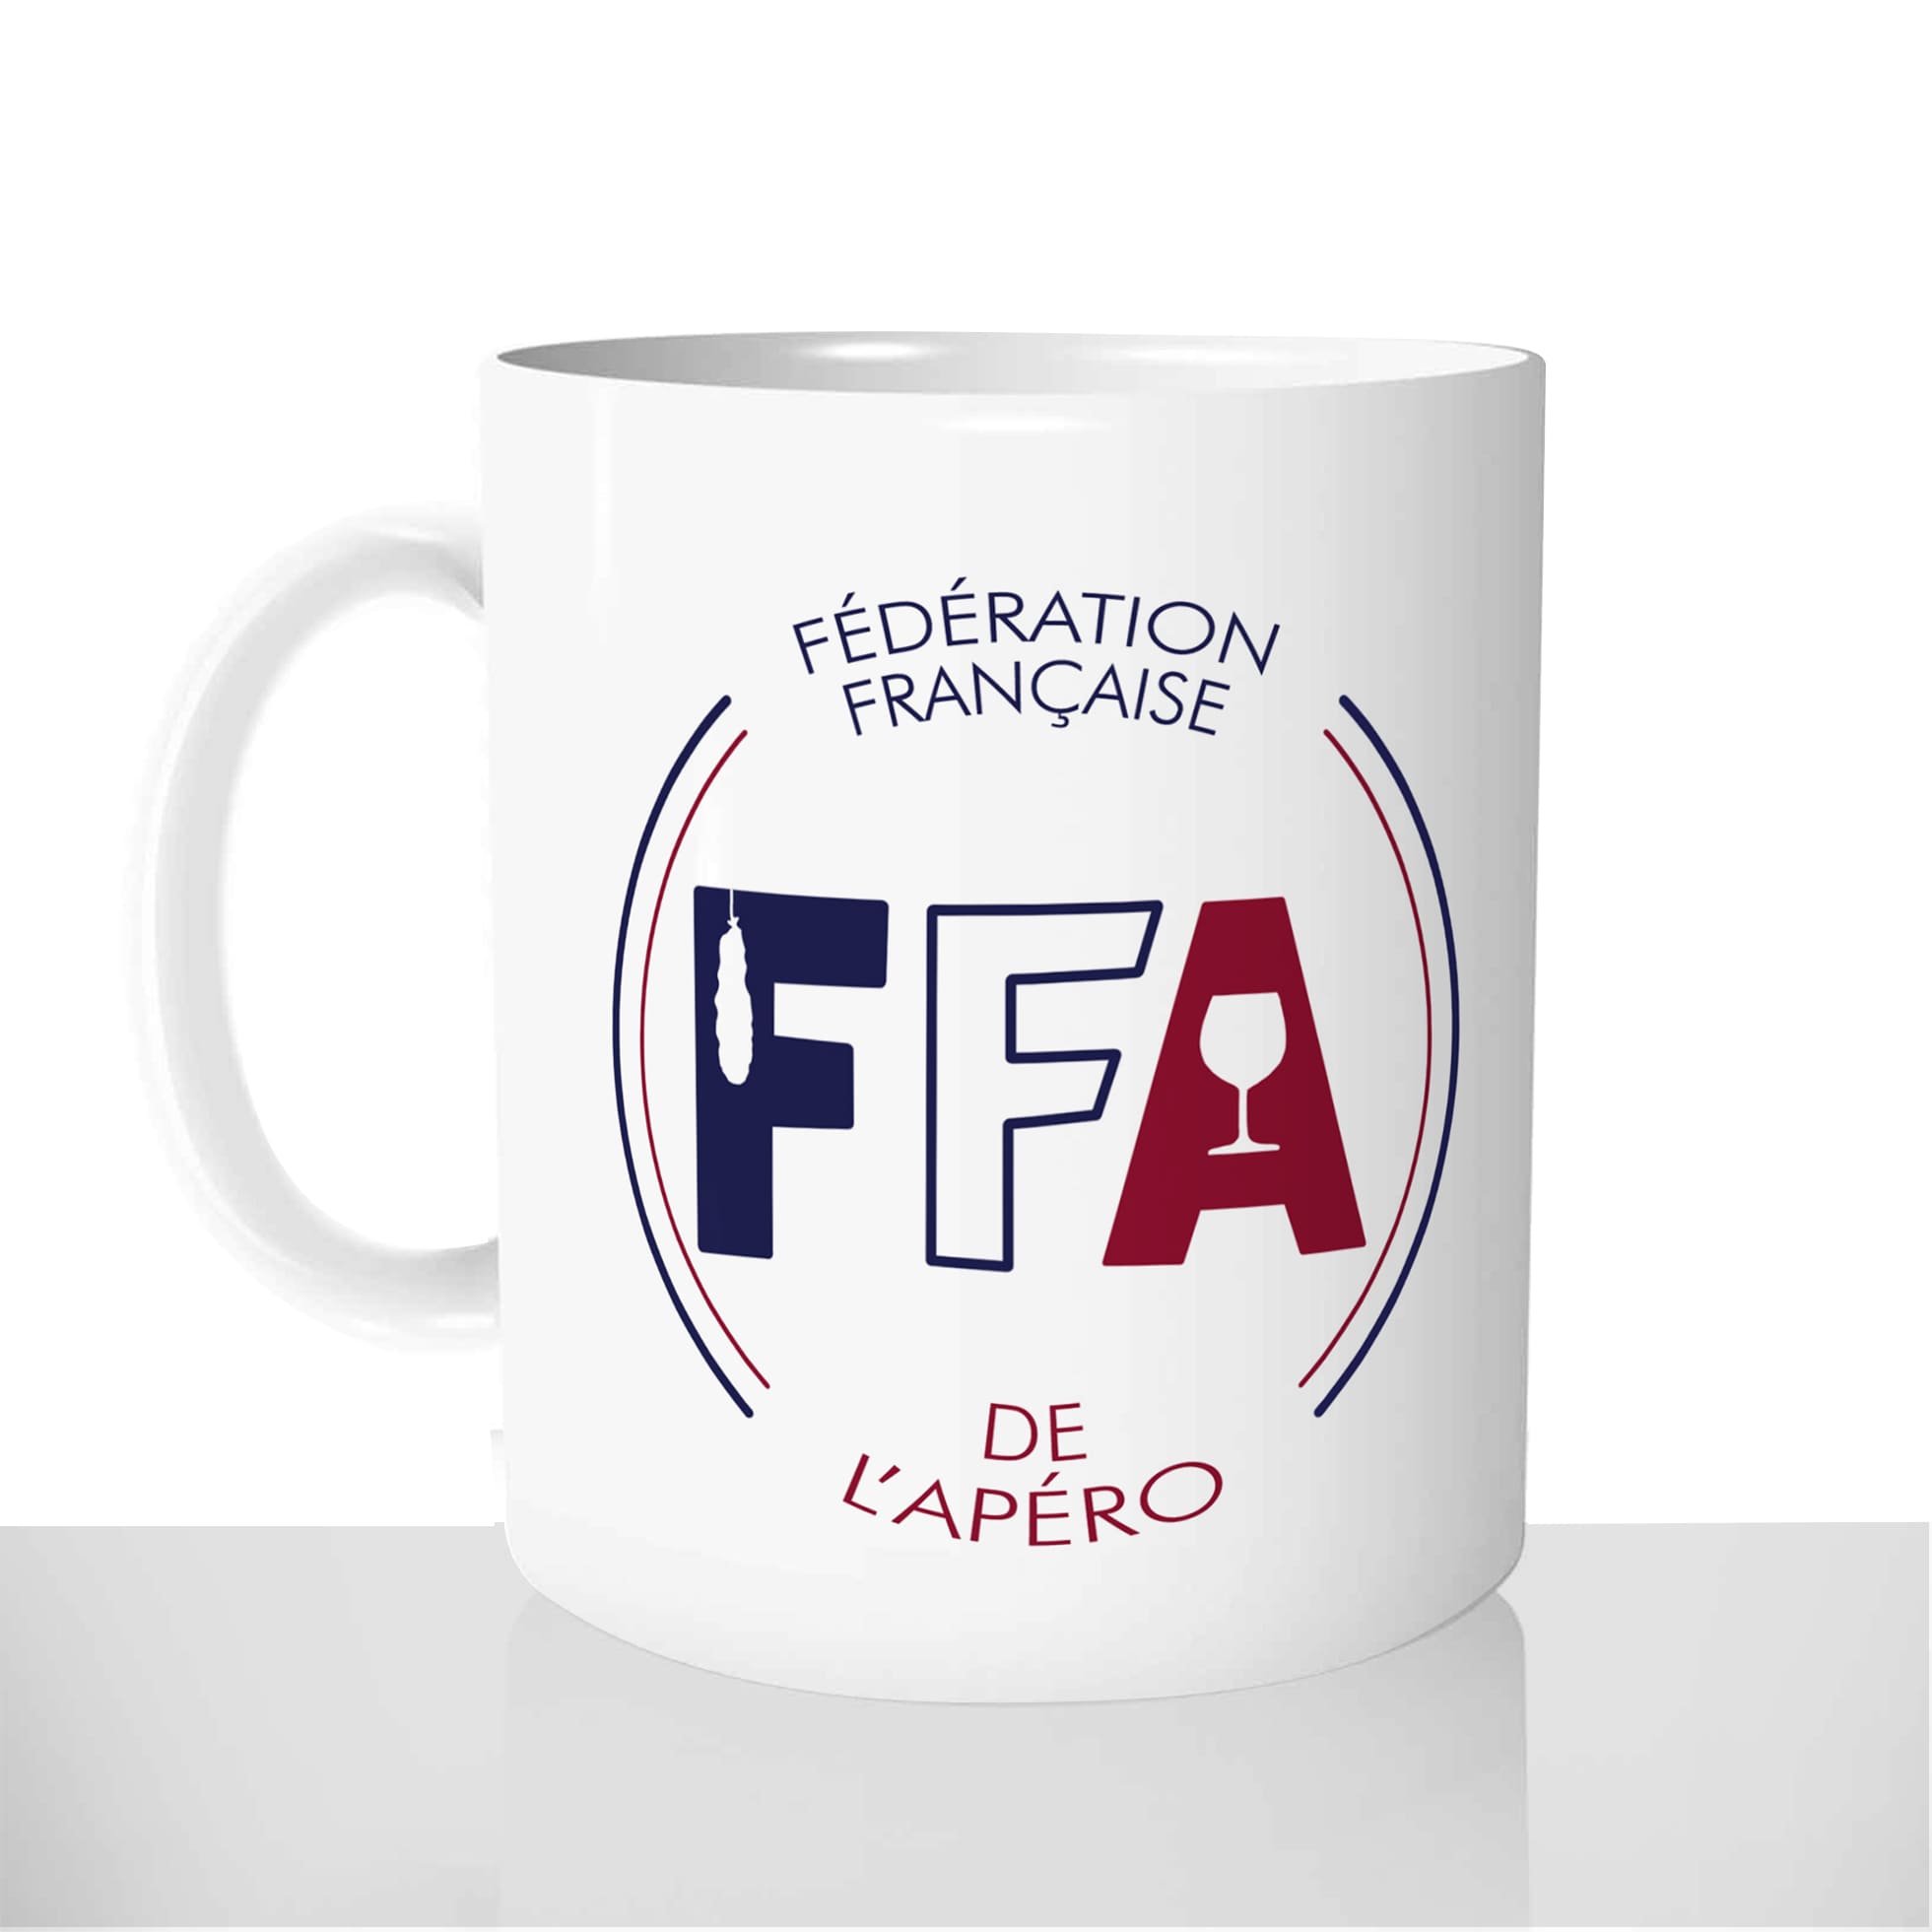 mug-tasse-blanc-brillant-personnalisé-ffa-federation-francaise-de-lapéro-aperitif-vin-saucisson-cadeau-original-personnalisable-francais